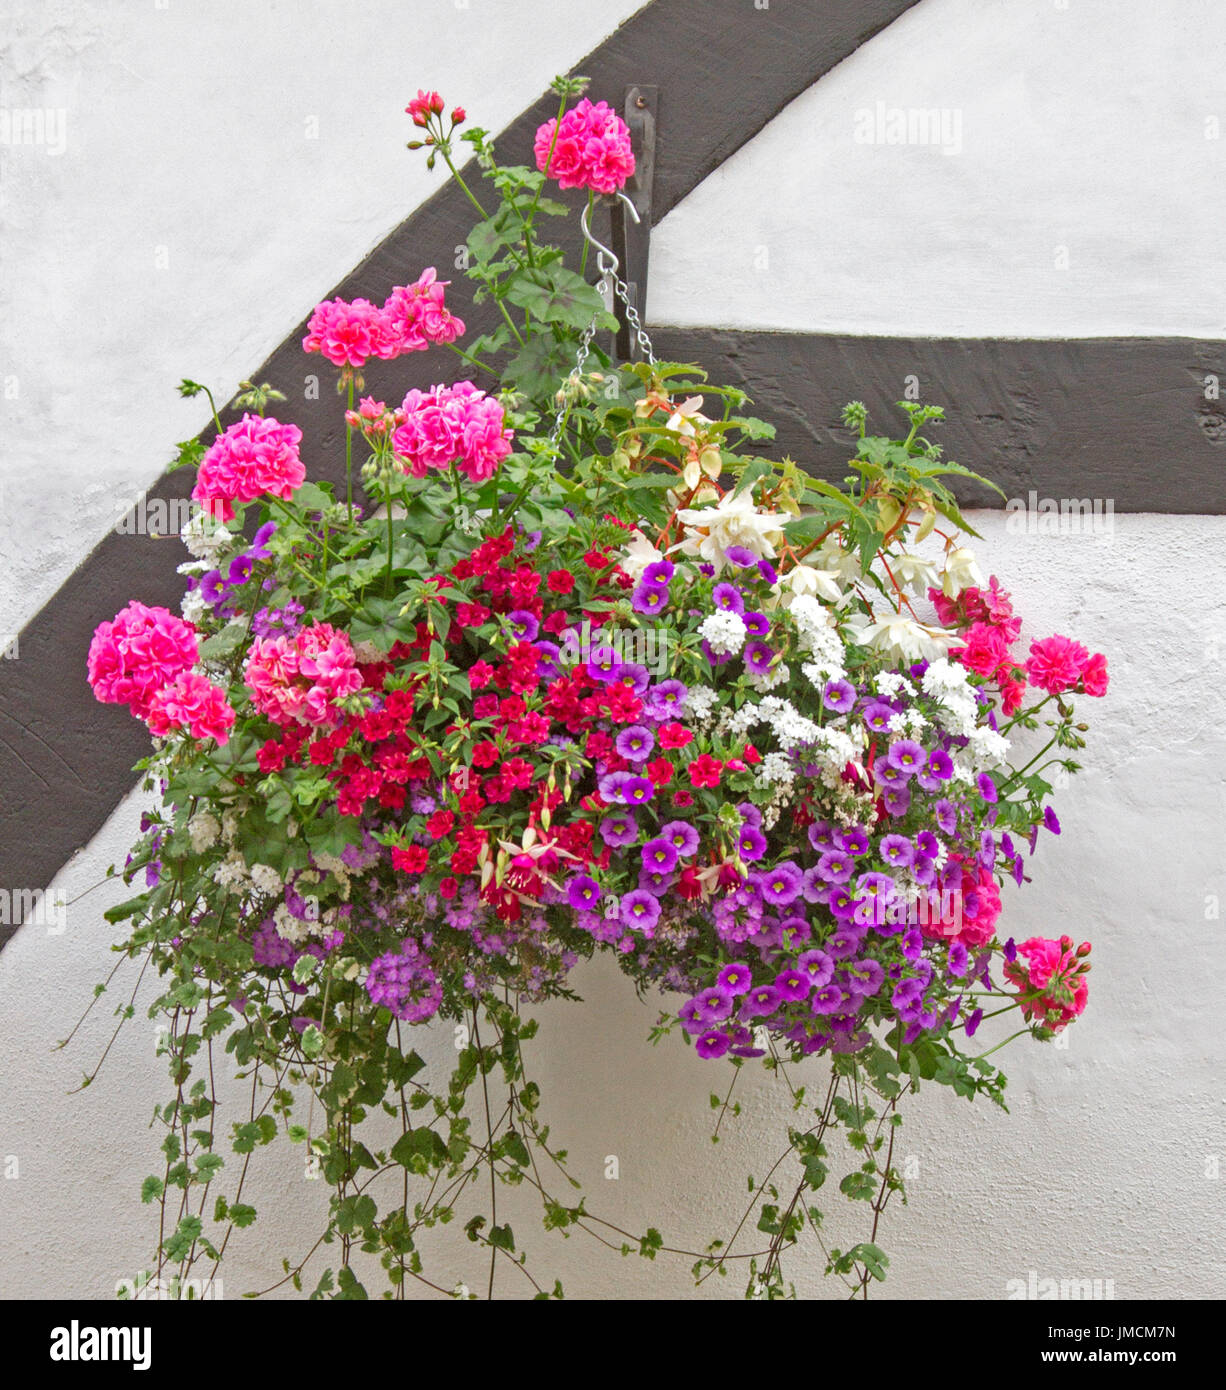 Massa di le piante di fioritura variopinte, Inc. La verbena bianco, viola e bianco calibrachoas, vivaci gerani rosa, nel cesto appeso contro il muro bianco Foto Stock